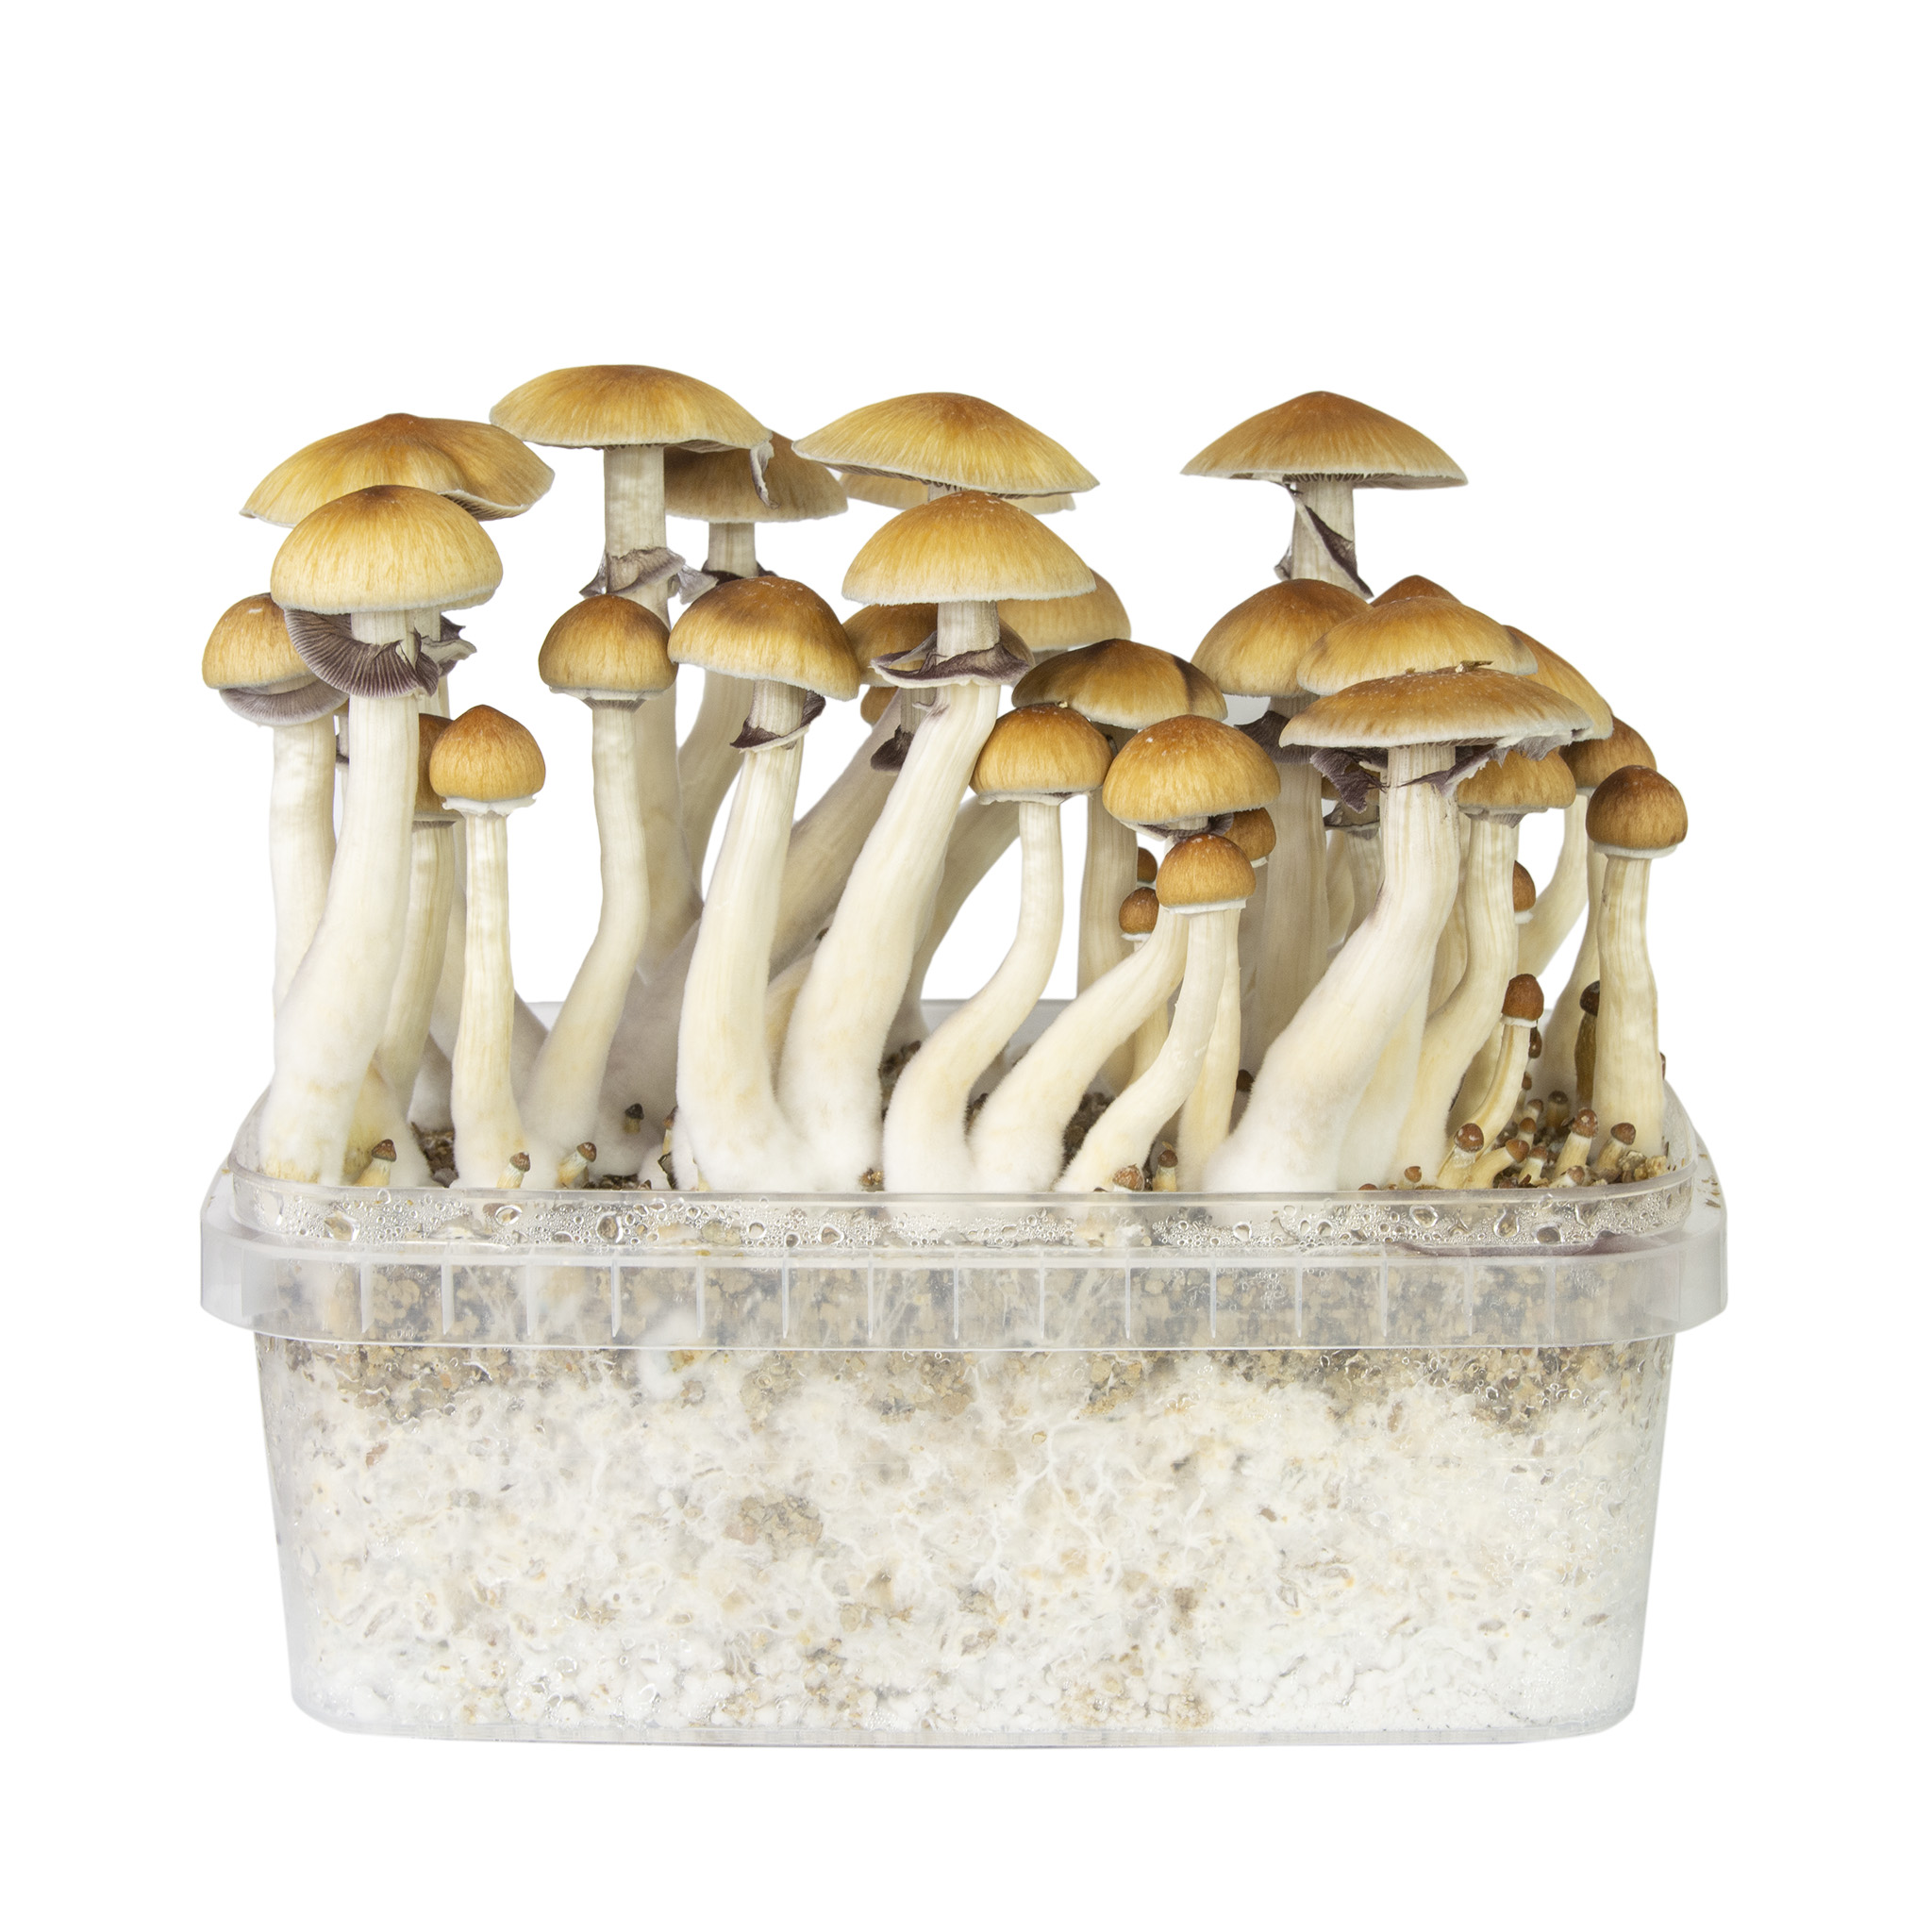 B+ Magic Mushroom Grow Kit - Chills & Thrills